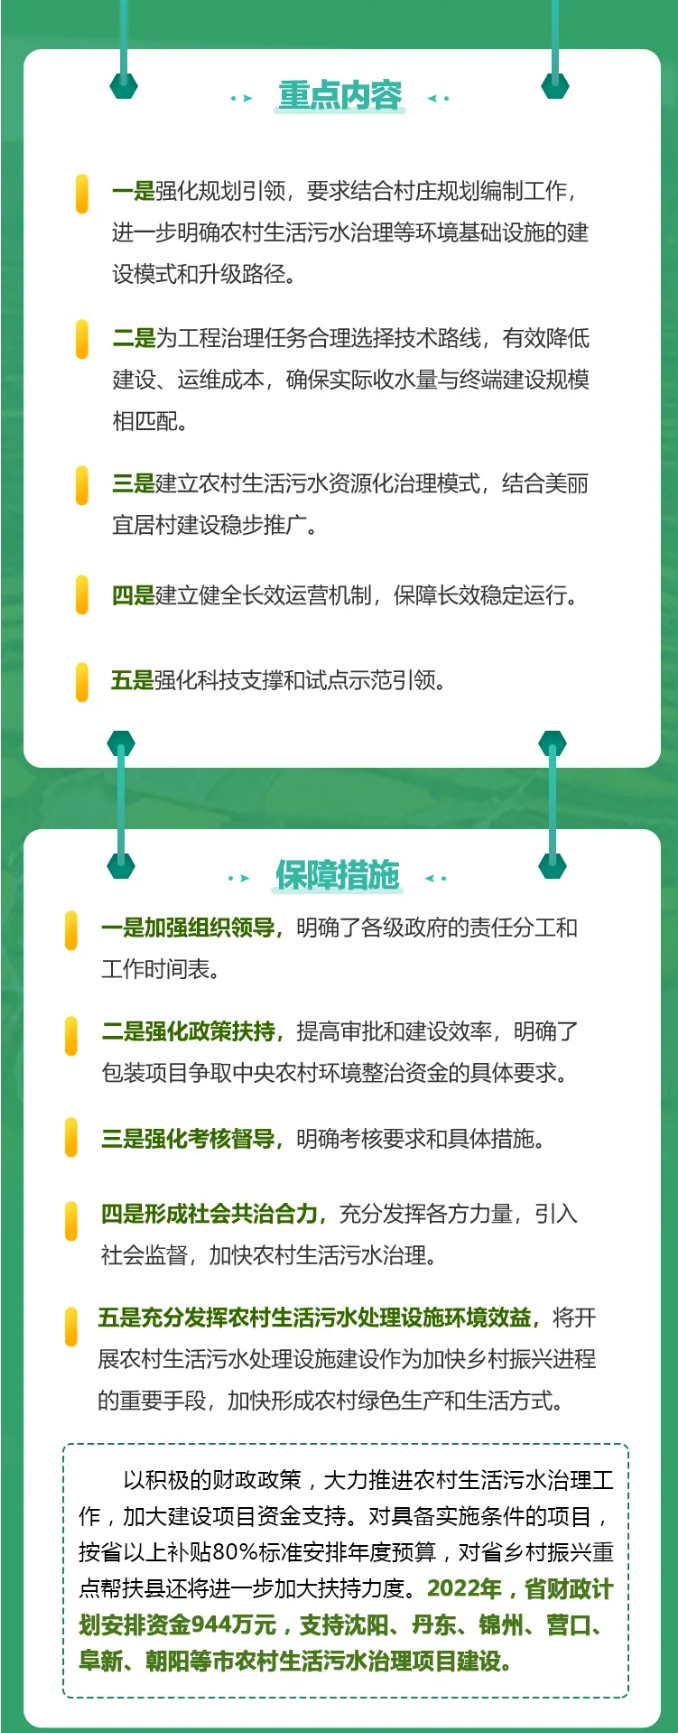 辽宁省农村生活污水治理三年行动方案（2021-2023）编制说明05